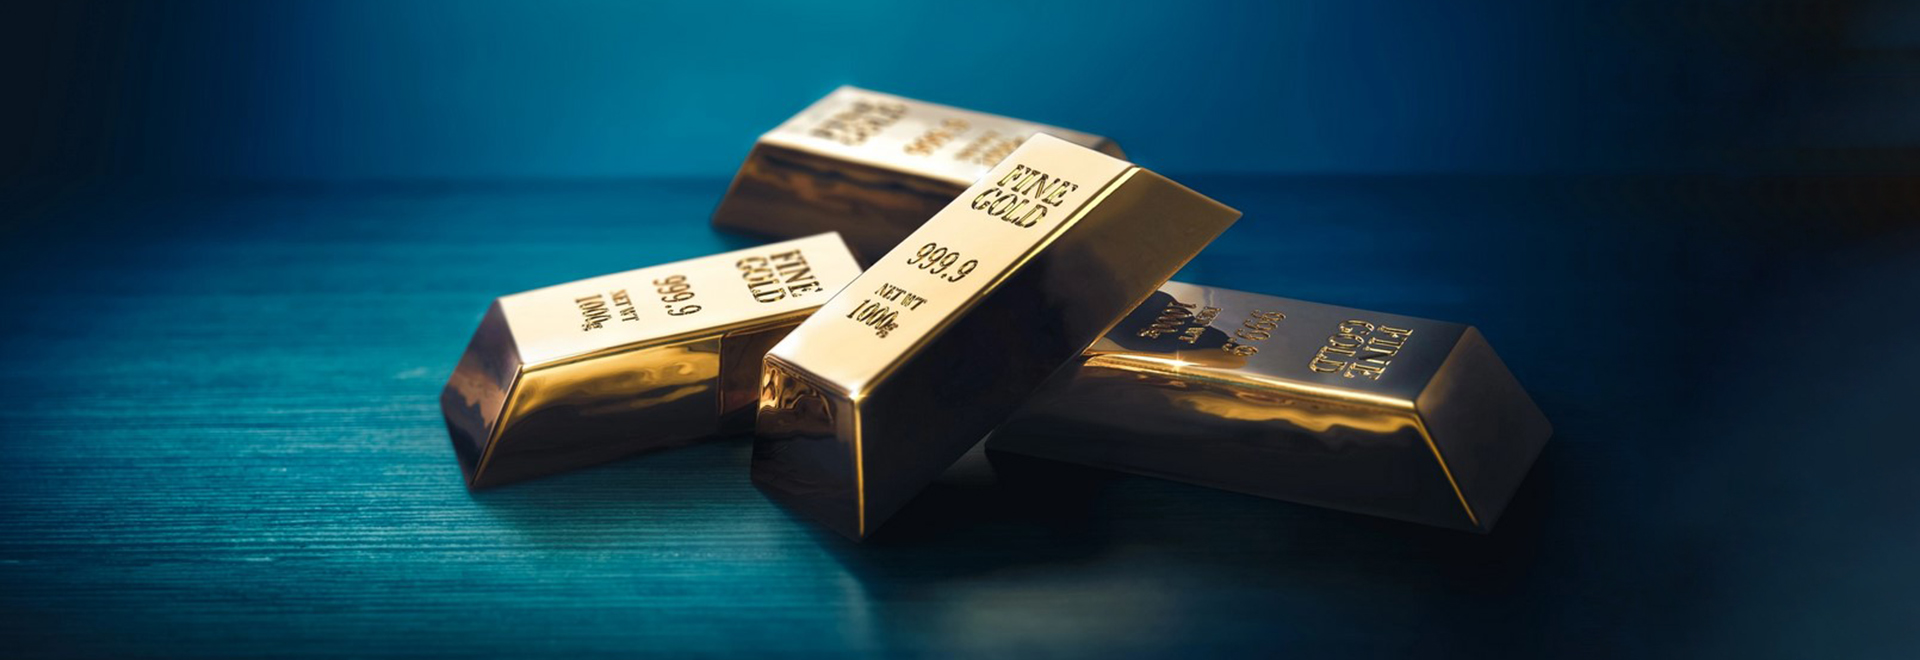 قیمت طلا به دلیل تقویت ارزش دلار کاهش یافته است